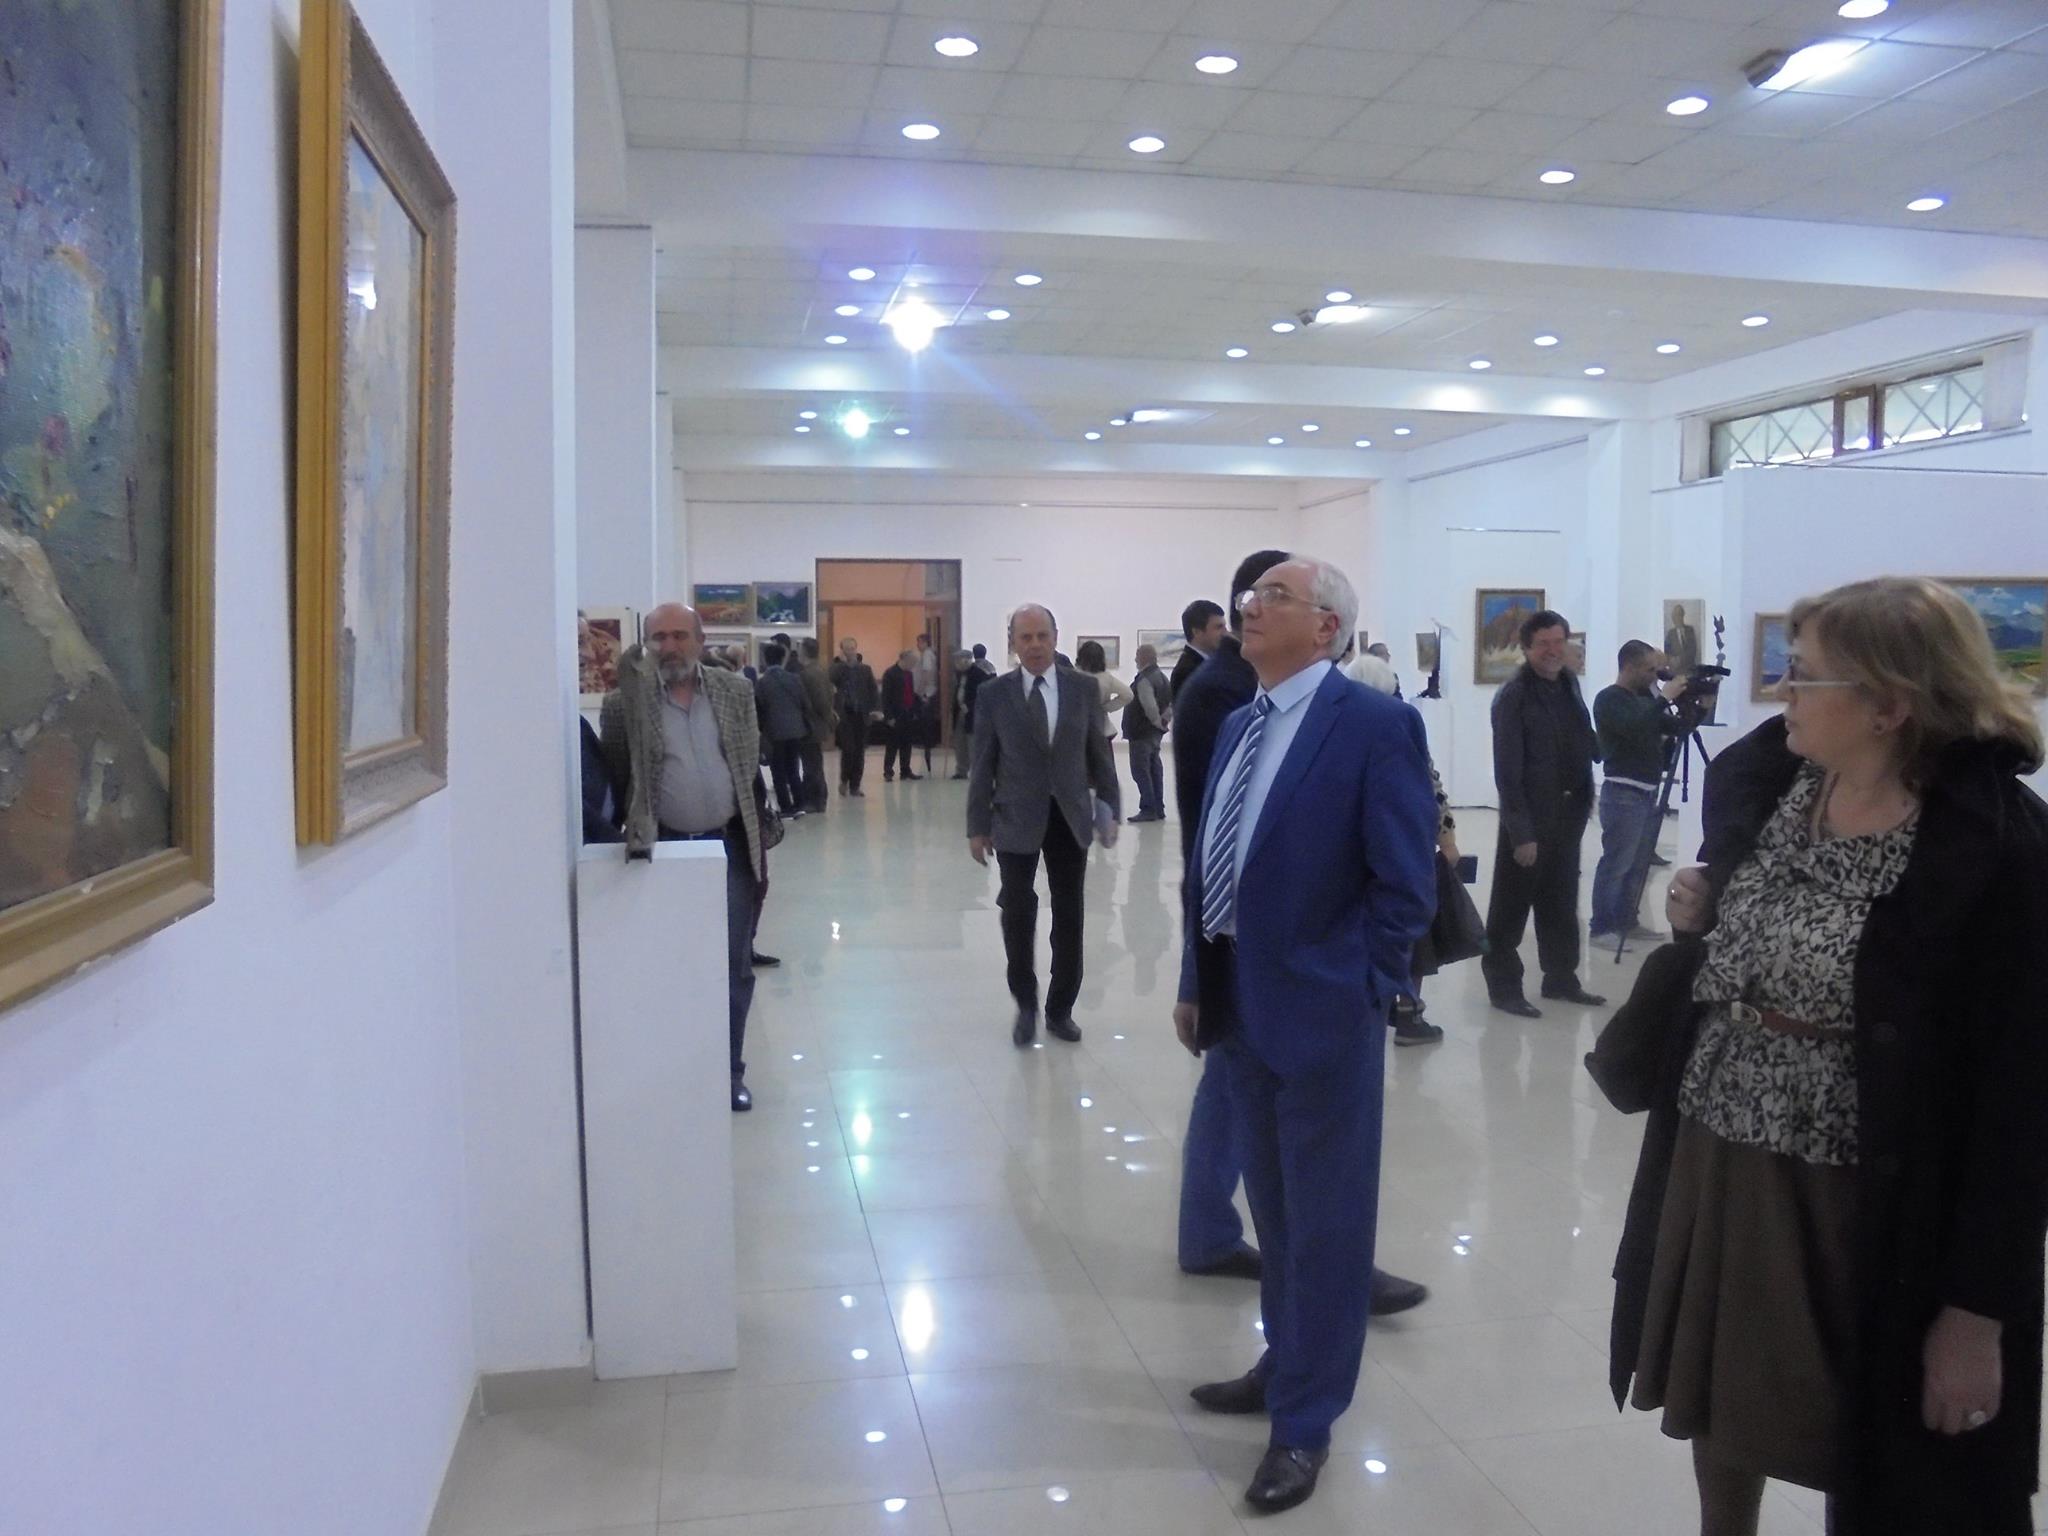 Ֆաշիզմի դեմ հաղթանակի 70 ամյակին նվիրված ցուցահանդես` Հայաստանի նկարիչների միությունում (լուսանկարներ)